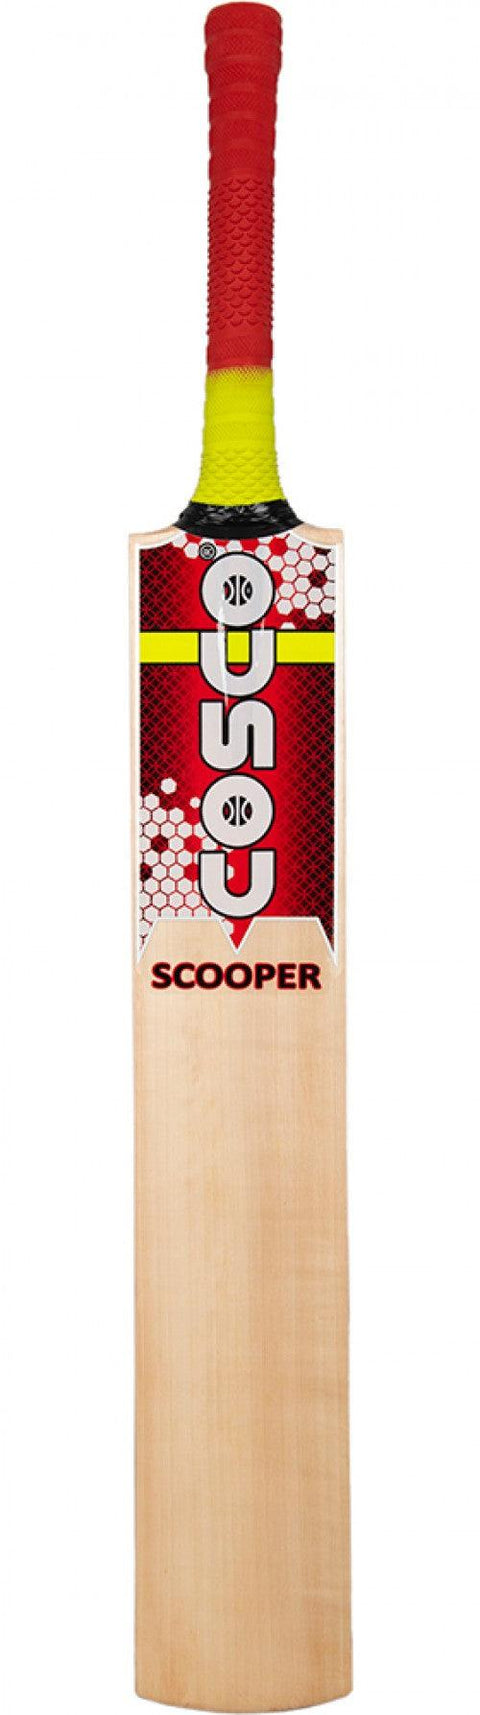 Cosco Scooper Tennis Cricket Bat | KIBI Sports